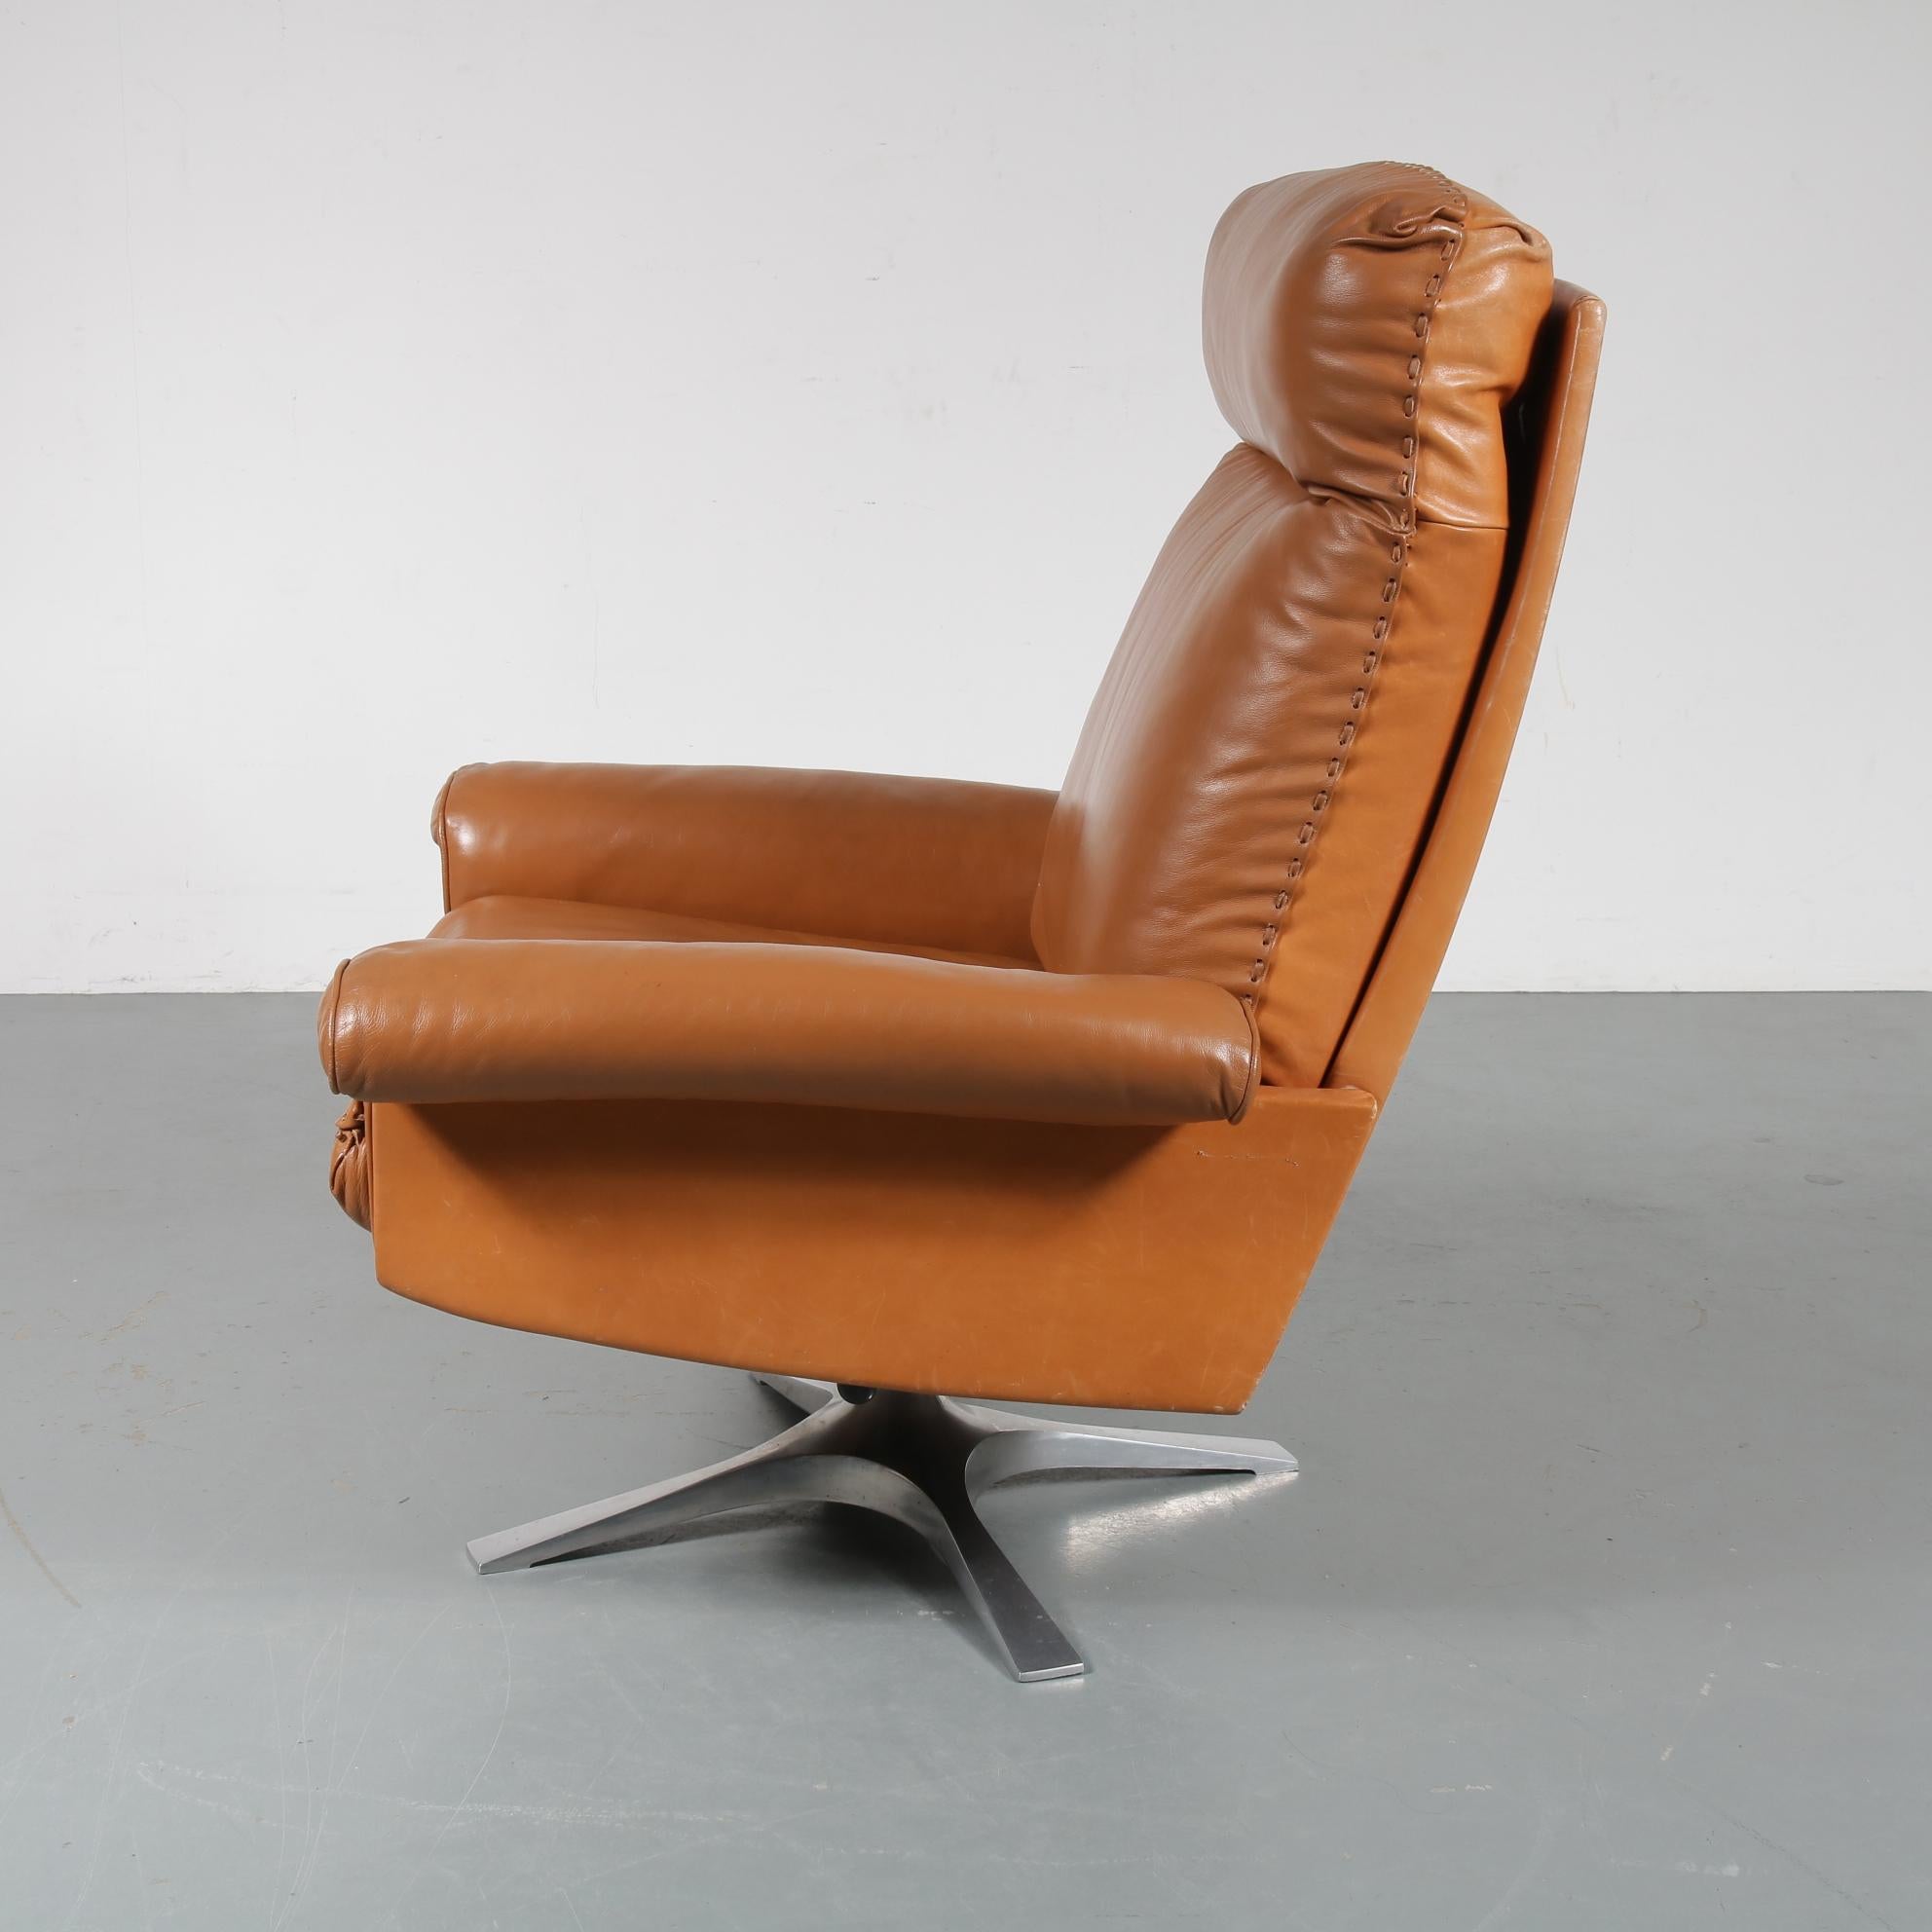 Swiss DS 31 Lounge Chair by De Sede, Switzerland, 1970